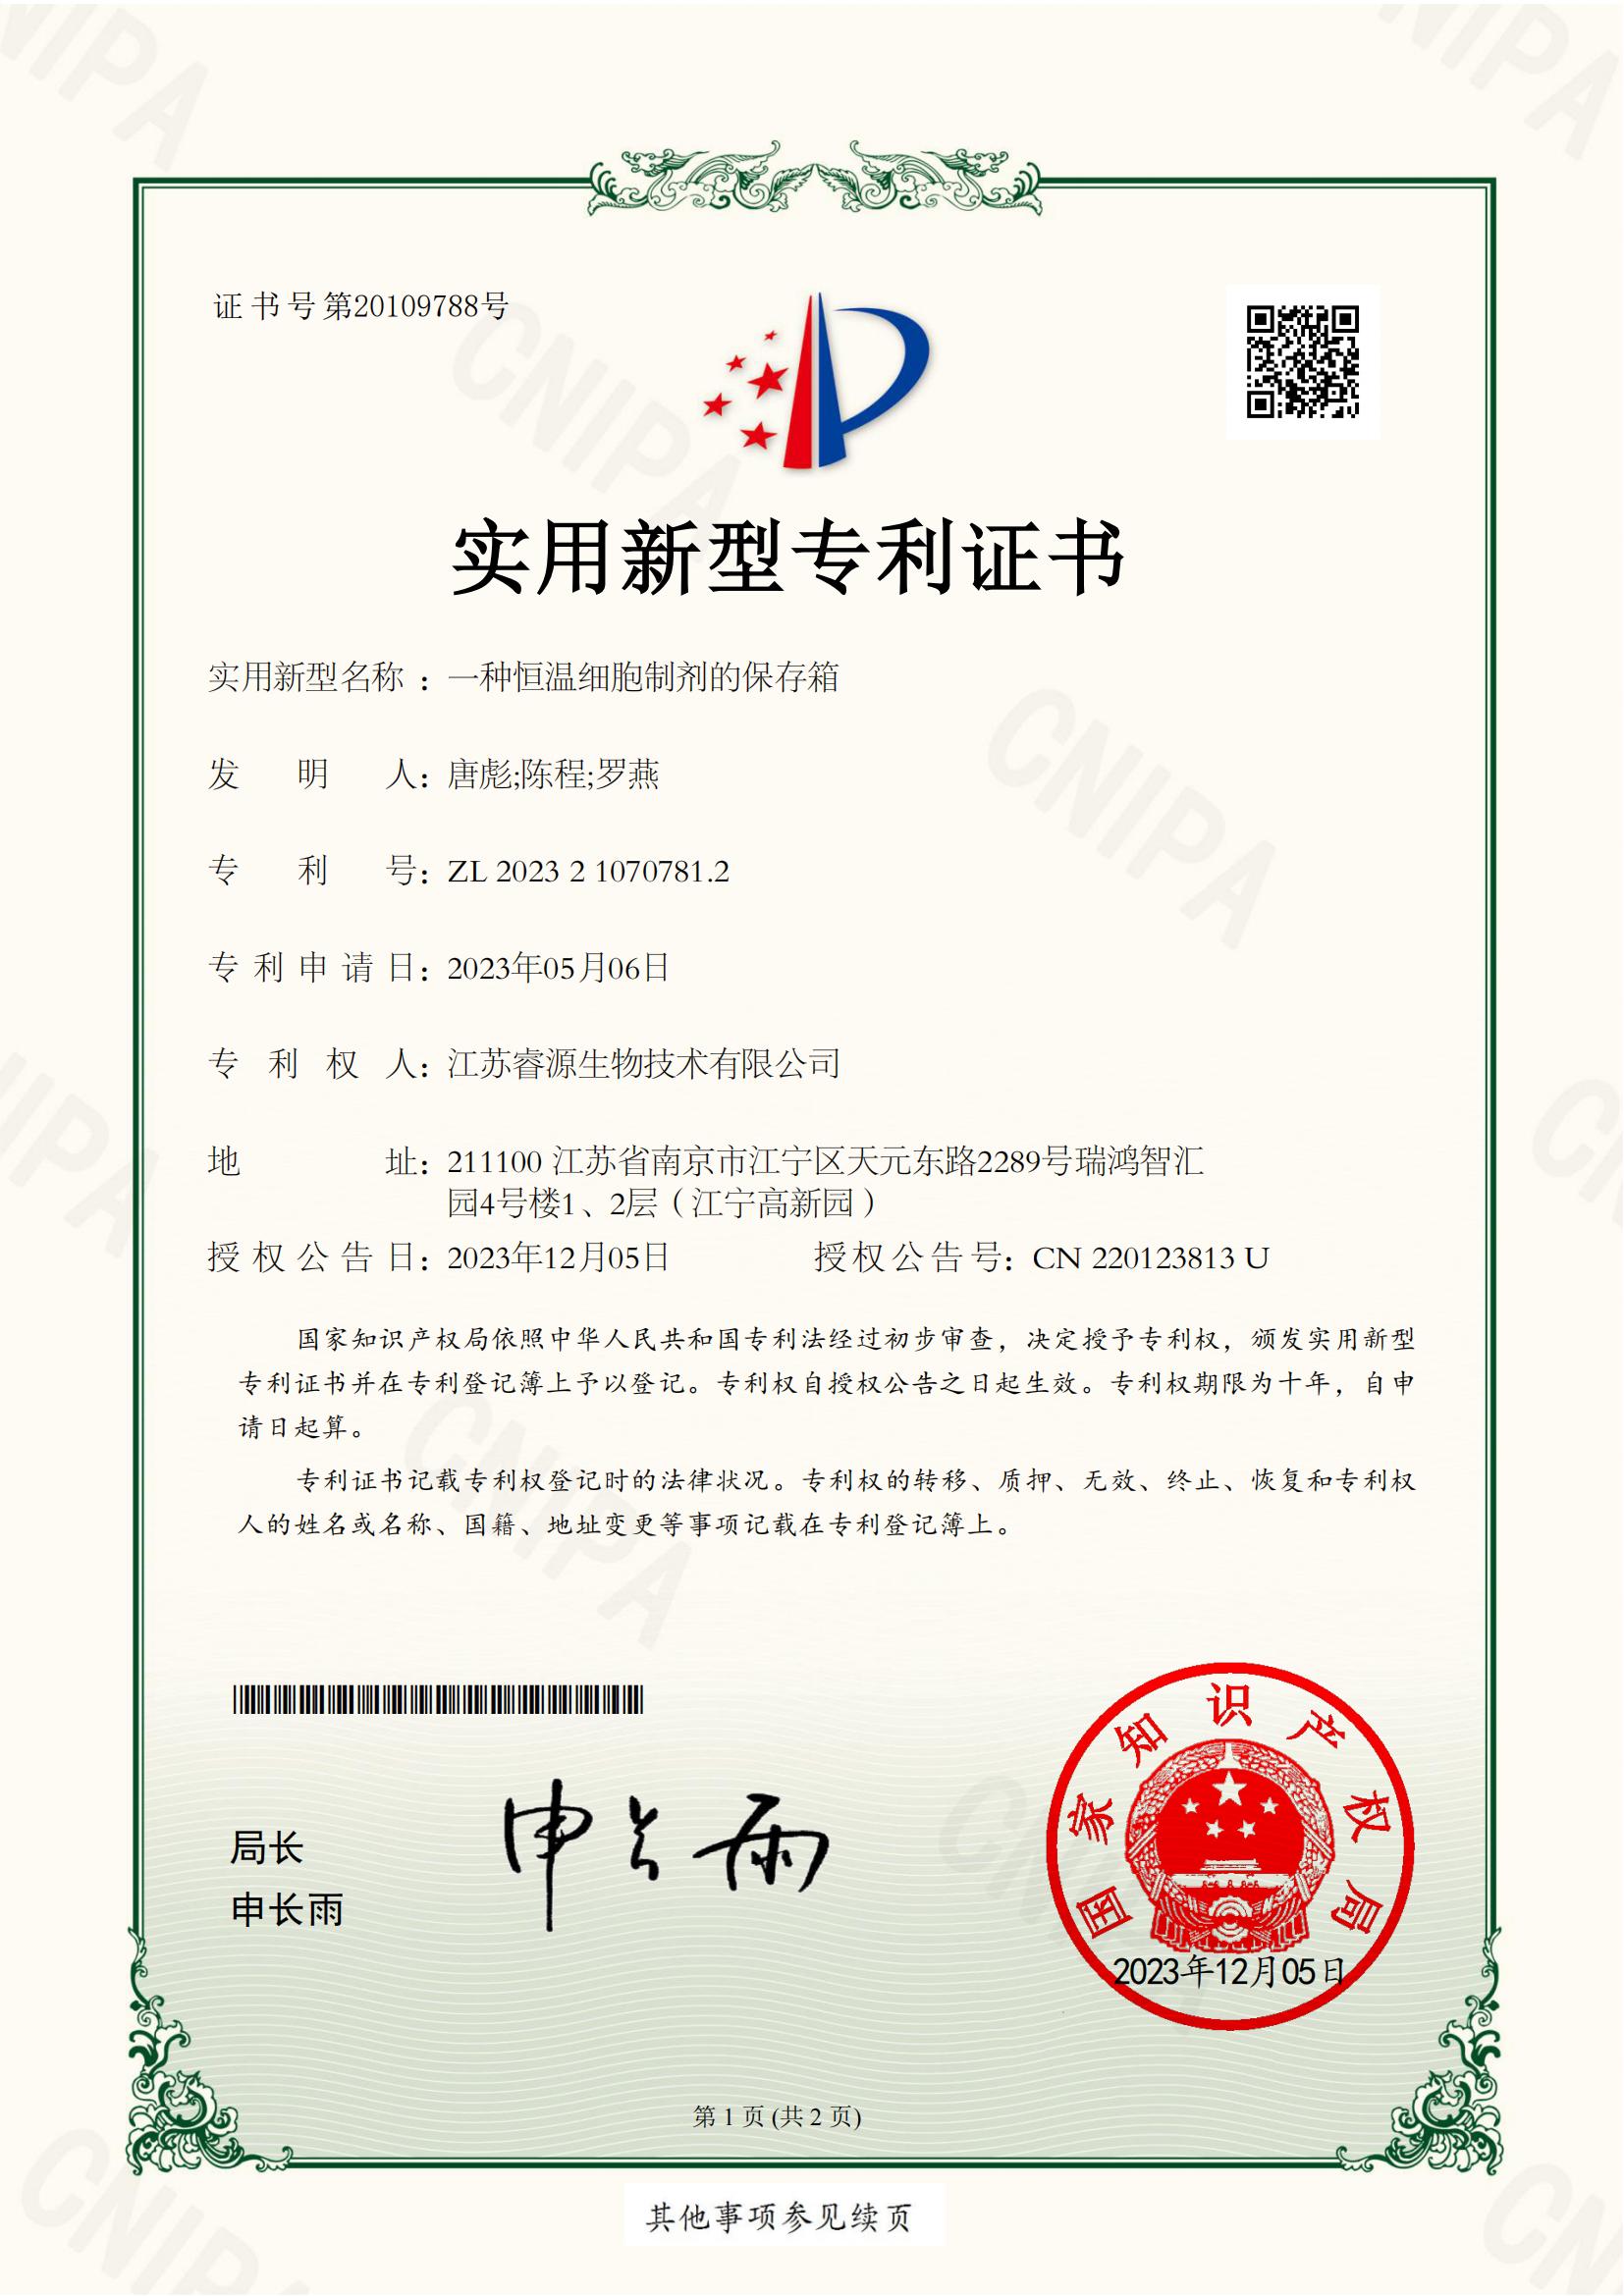 1.NJJIP2-20232-011巨-实用新型专利证书_00